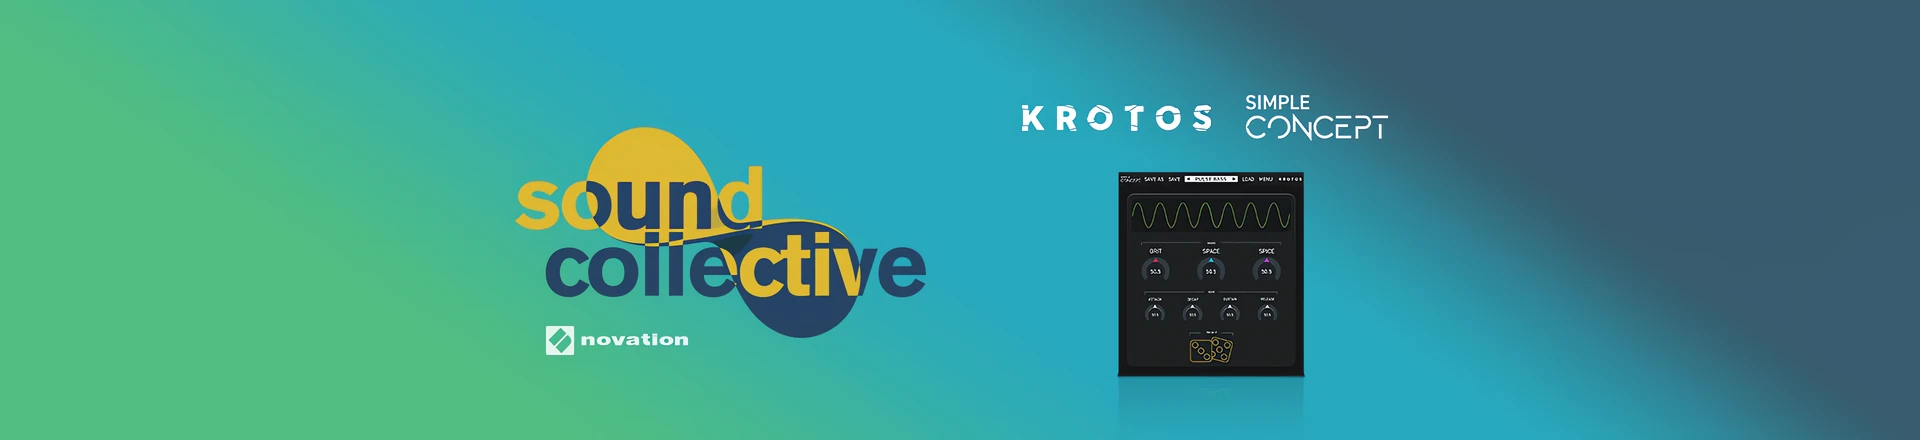 Wtyczka Simple Concept od Krotos Audio w najnowszym wydaniu Sound Collective